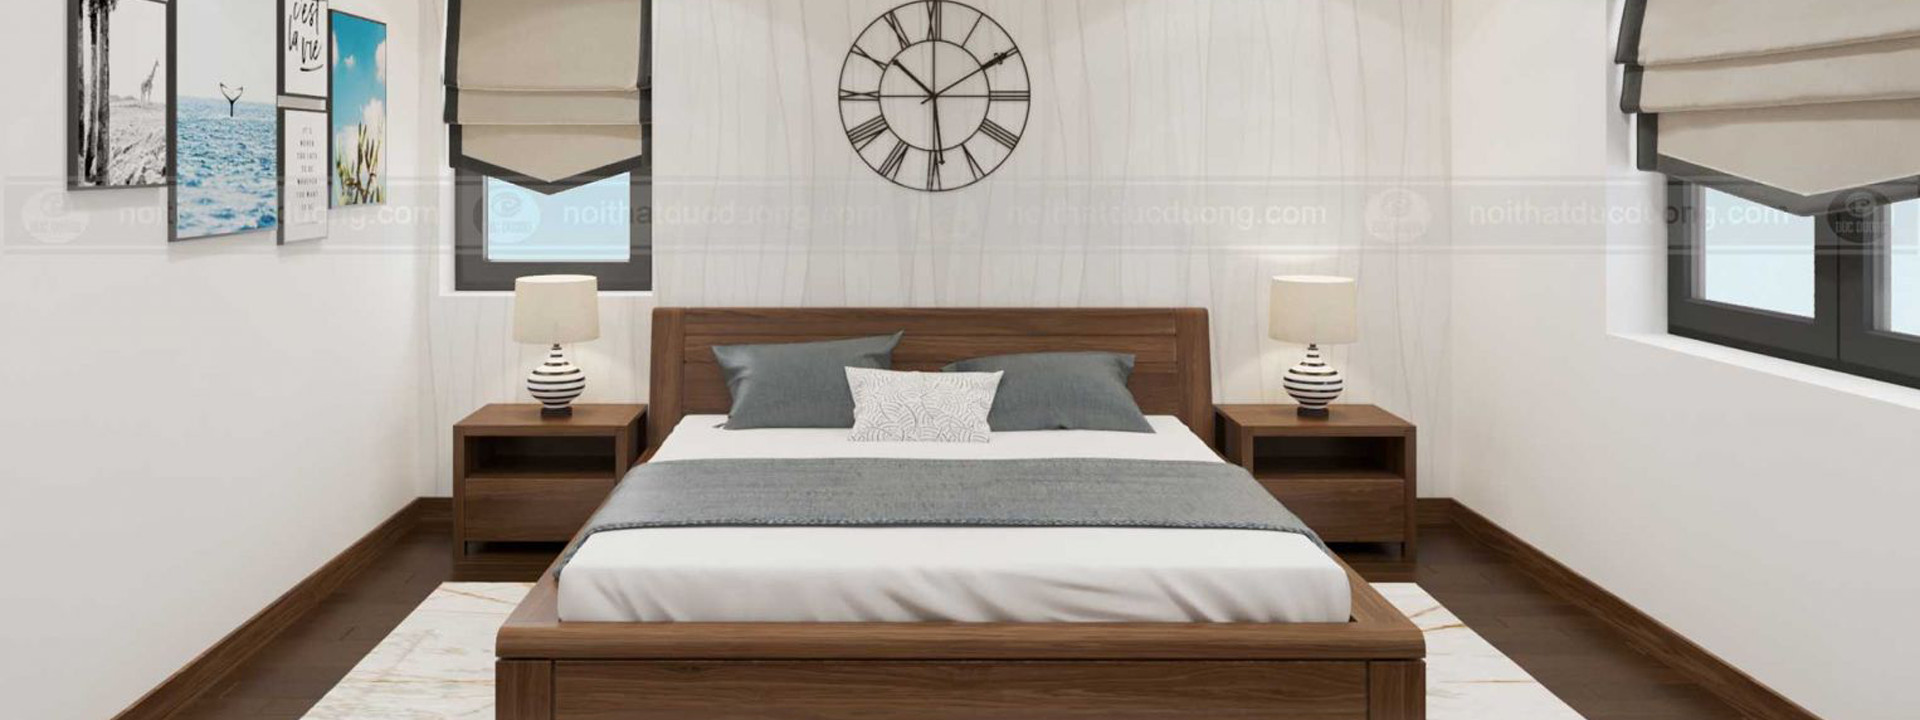 Top 15 mẫu thiết kế nội thất phòng ngủ hiện đại đẹp, sang trọng